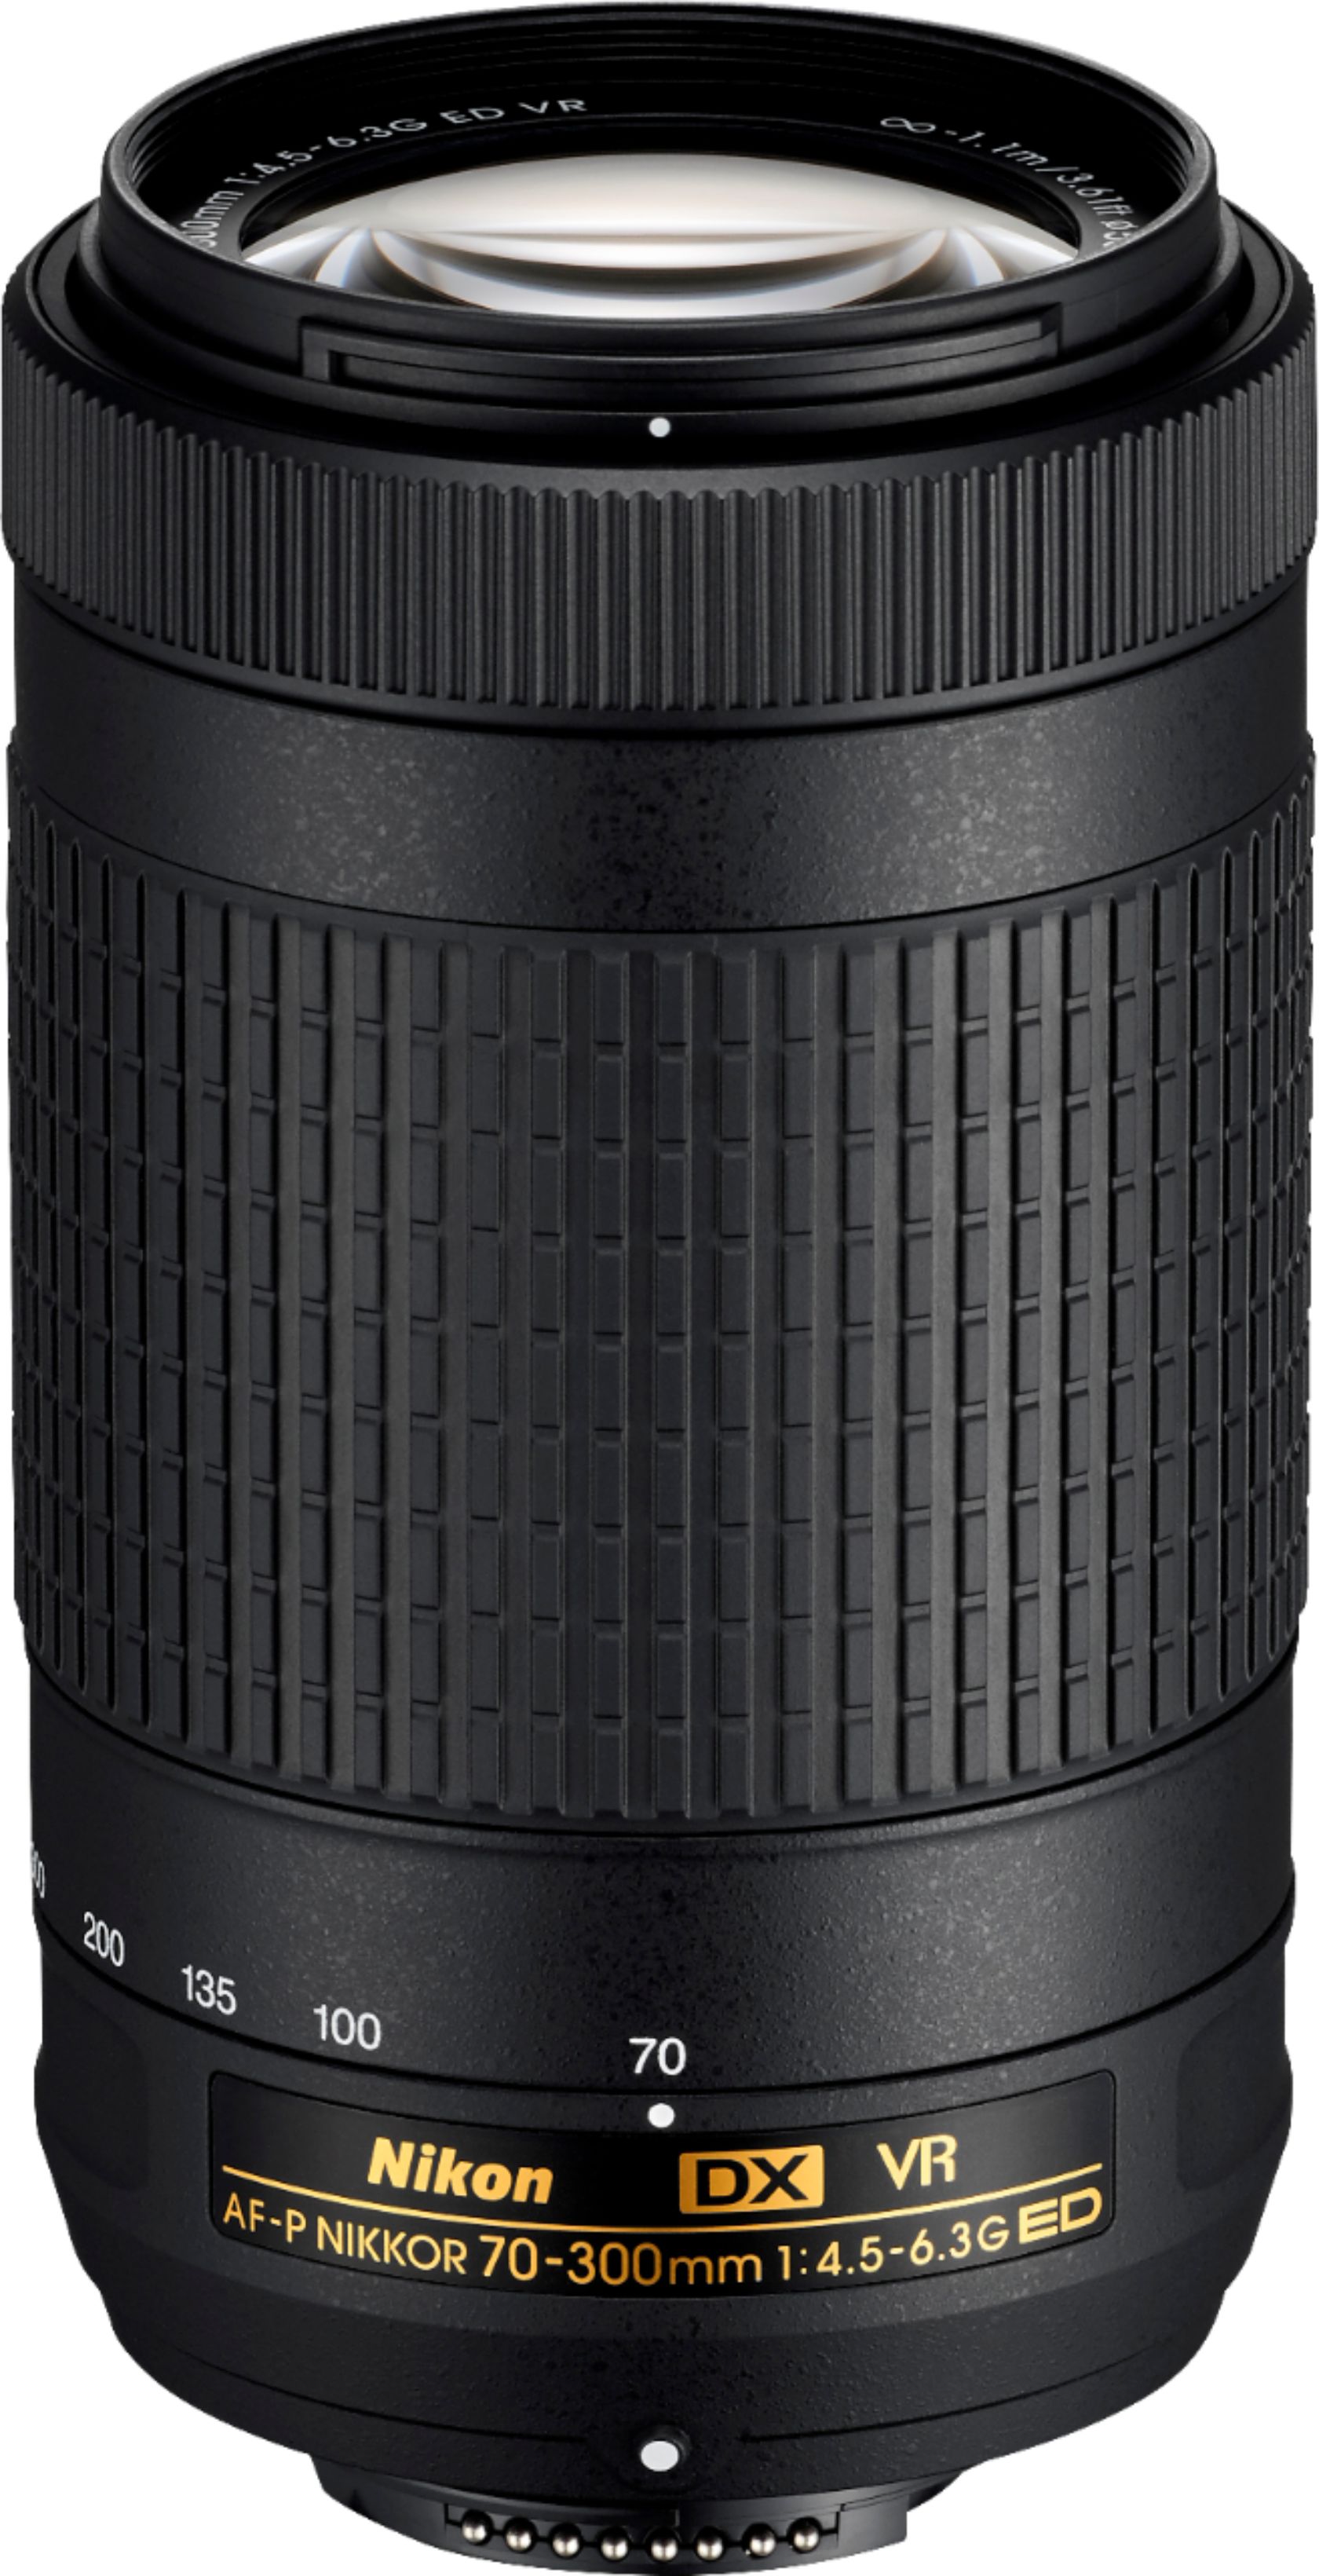 Bedrog Goneryl Microprocessor Nikon AF-P DX NIKKOR 70-300mm f/4.5-6.3G ED VR Telephoto Zoom Lens for  APS-C F-mount cameras Black 20062 - Best Buy